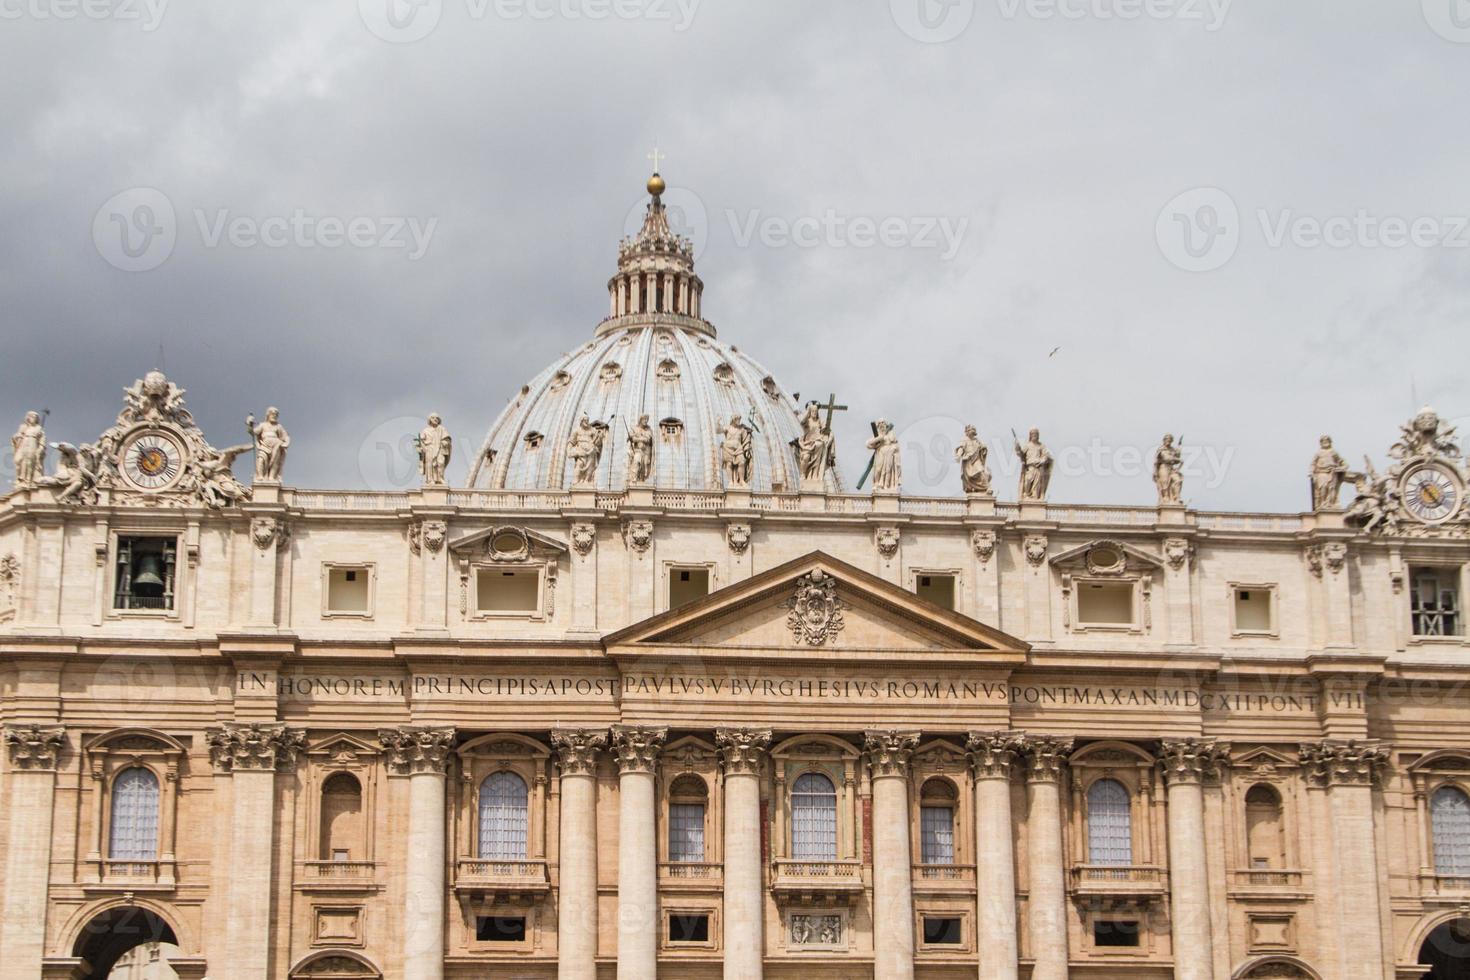 basilica di san pietro, rome italië foto